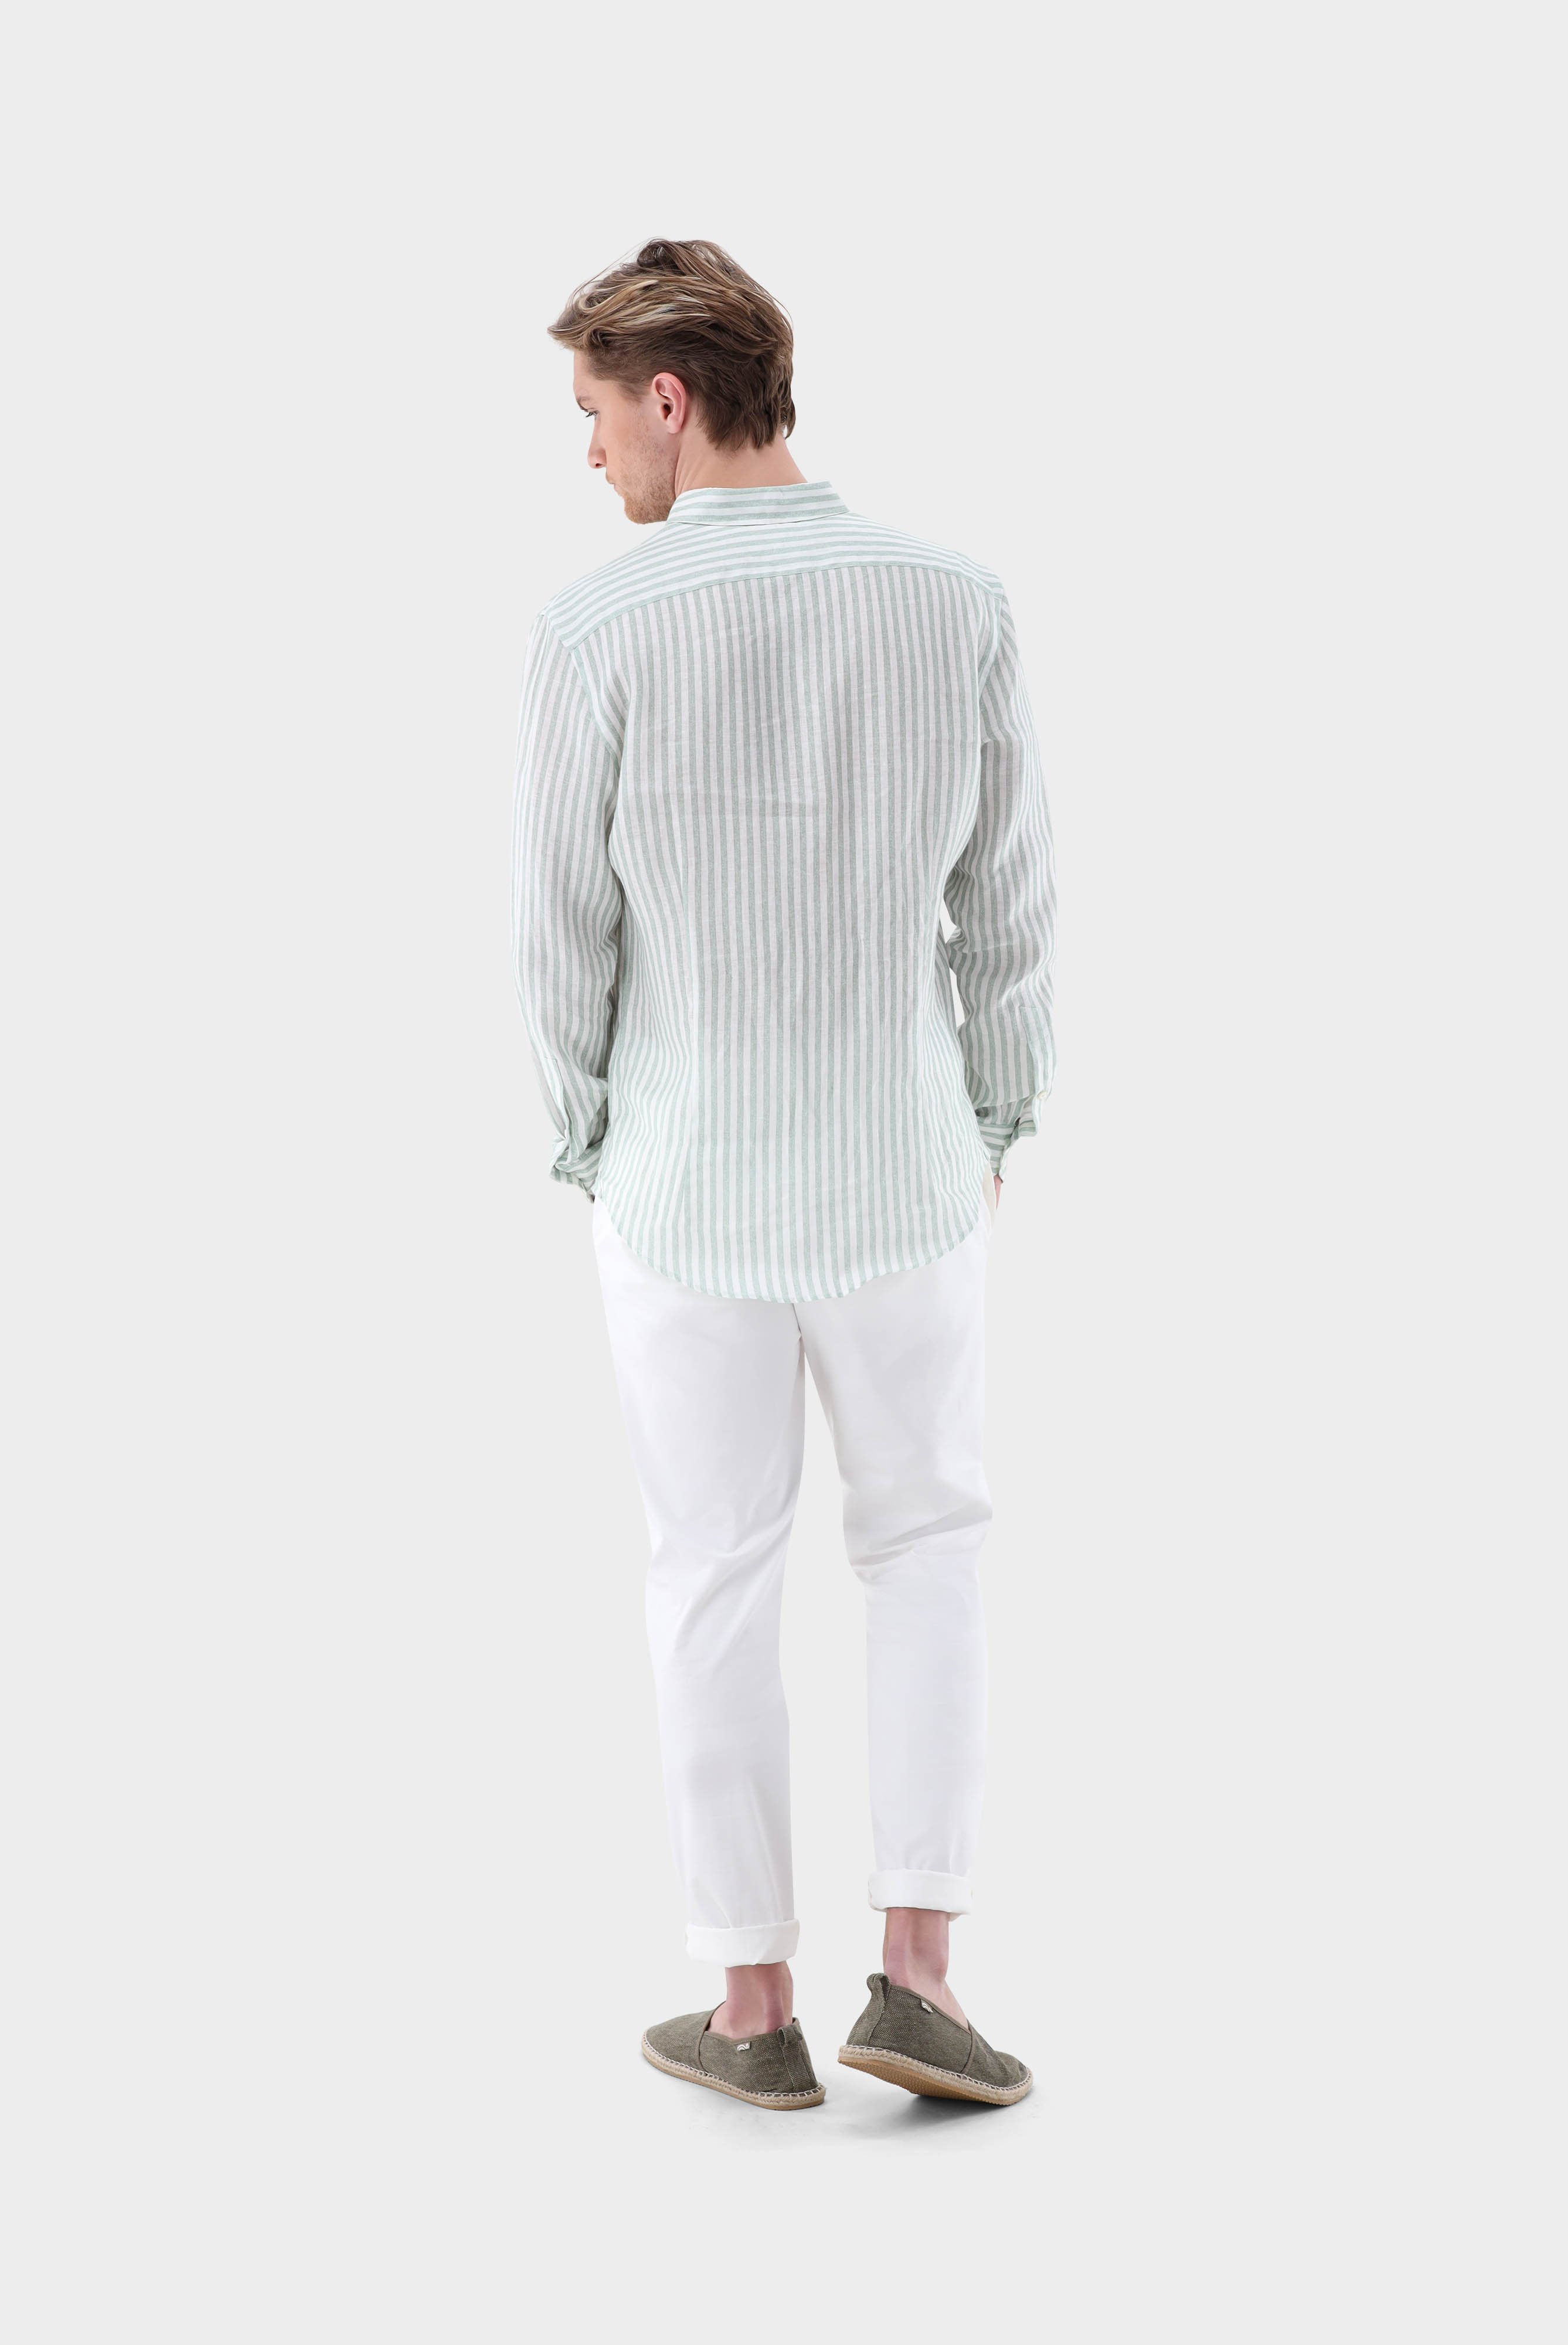 Casual Hemden+Leinenhemd mit Streifen-Druck Tailor Fit+20.2013.9V.170352.940.38